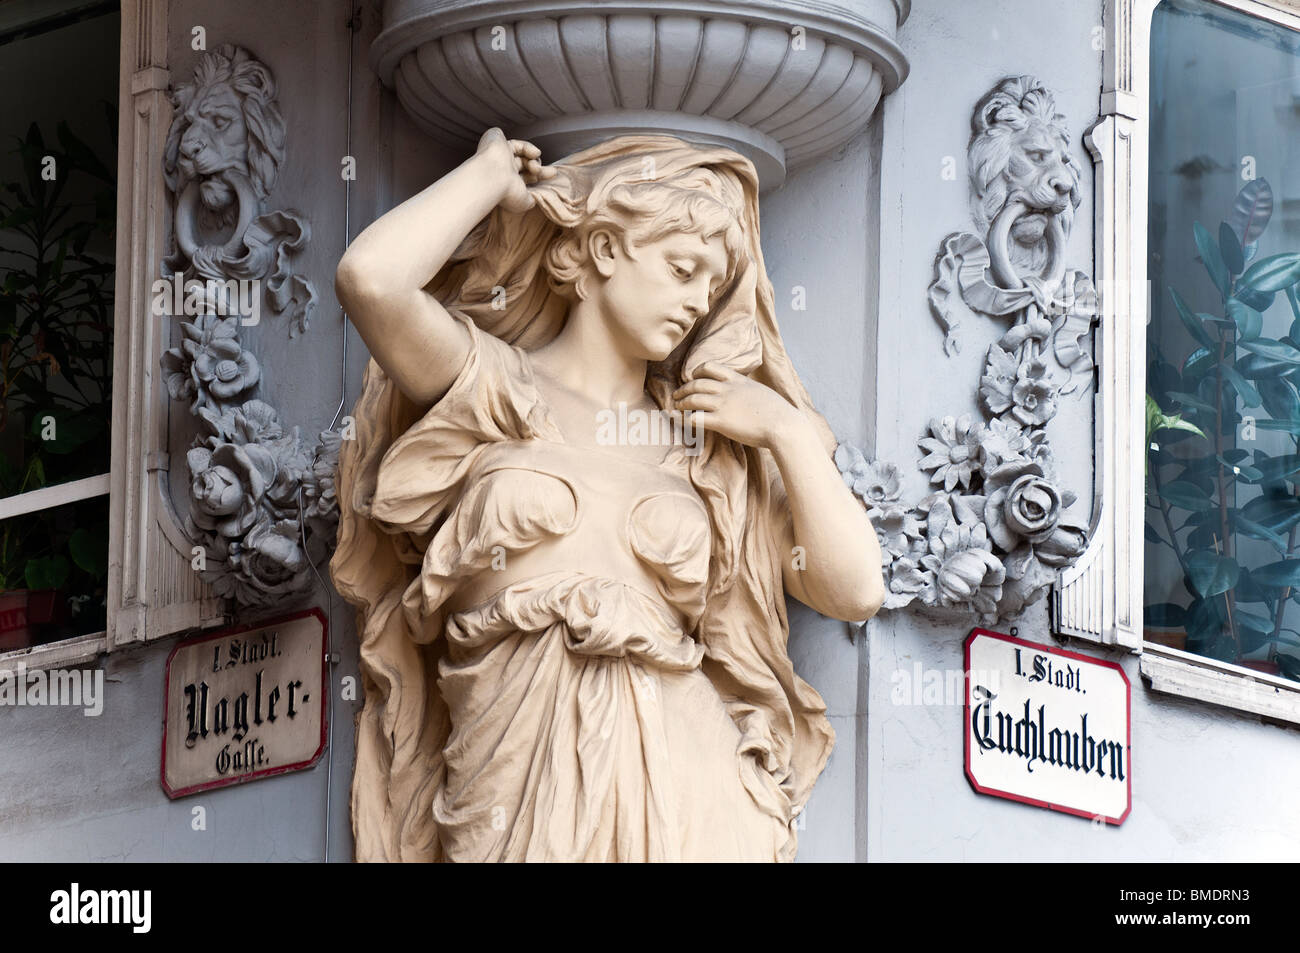 Jugendstil-Skulptur, Tuchlauben Straße, Innere Stadt, Wien, Österreich Stockfoto